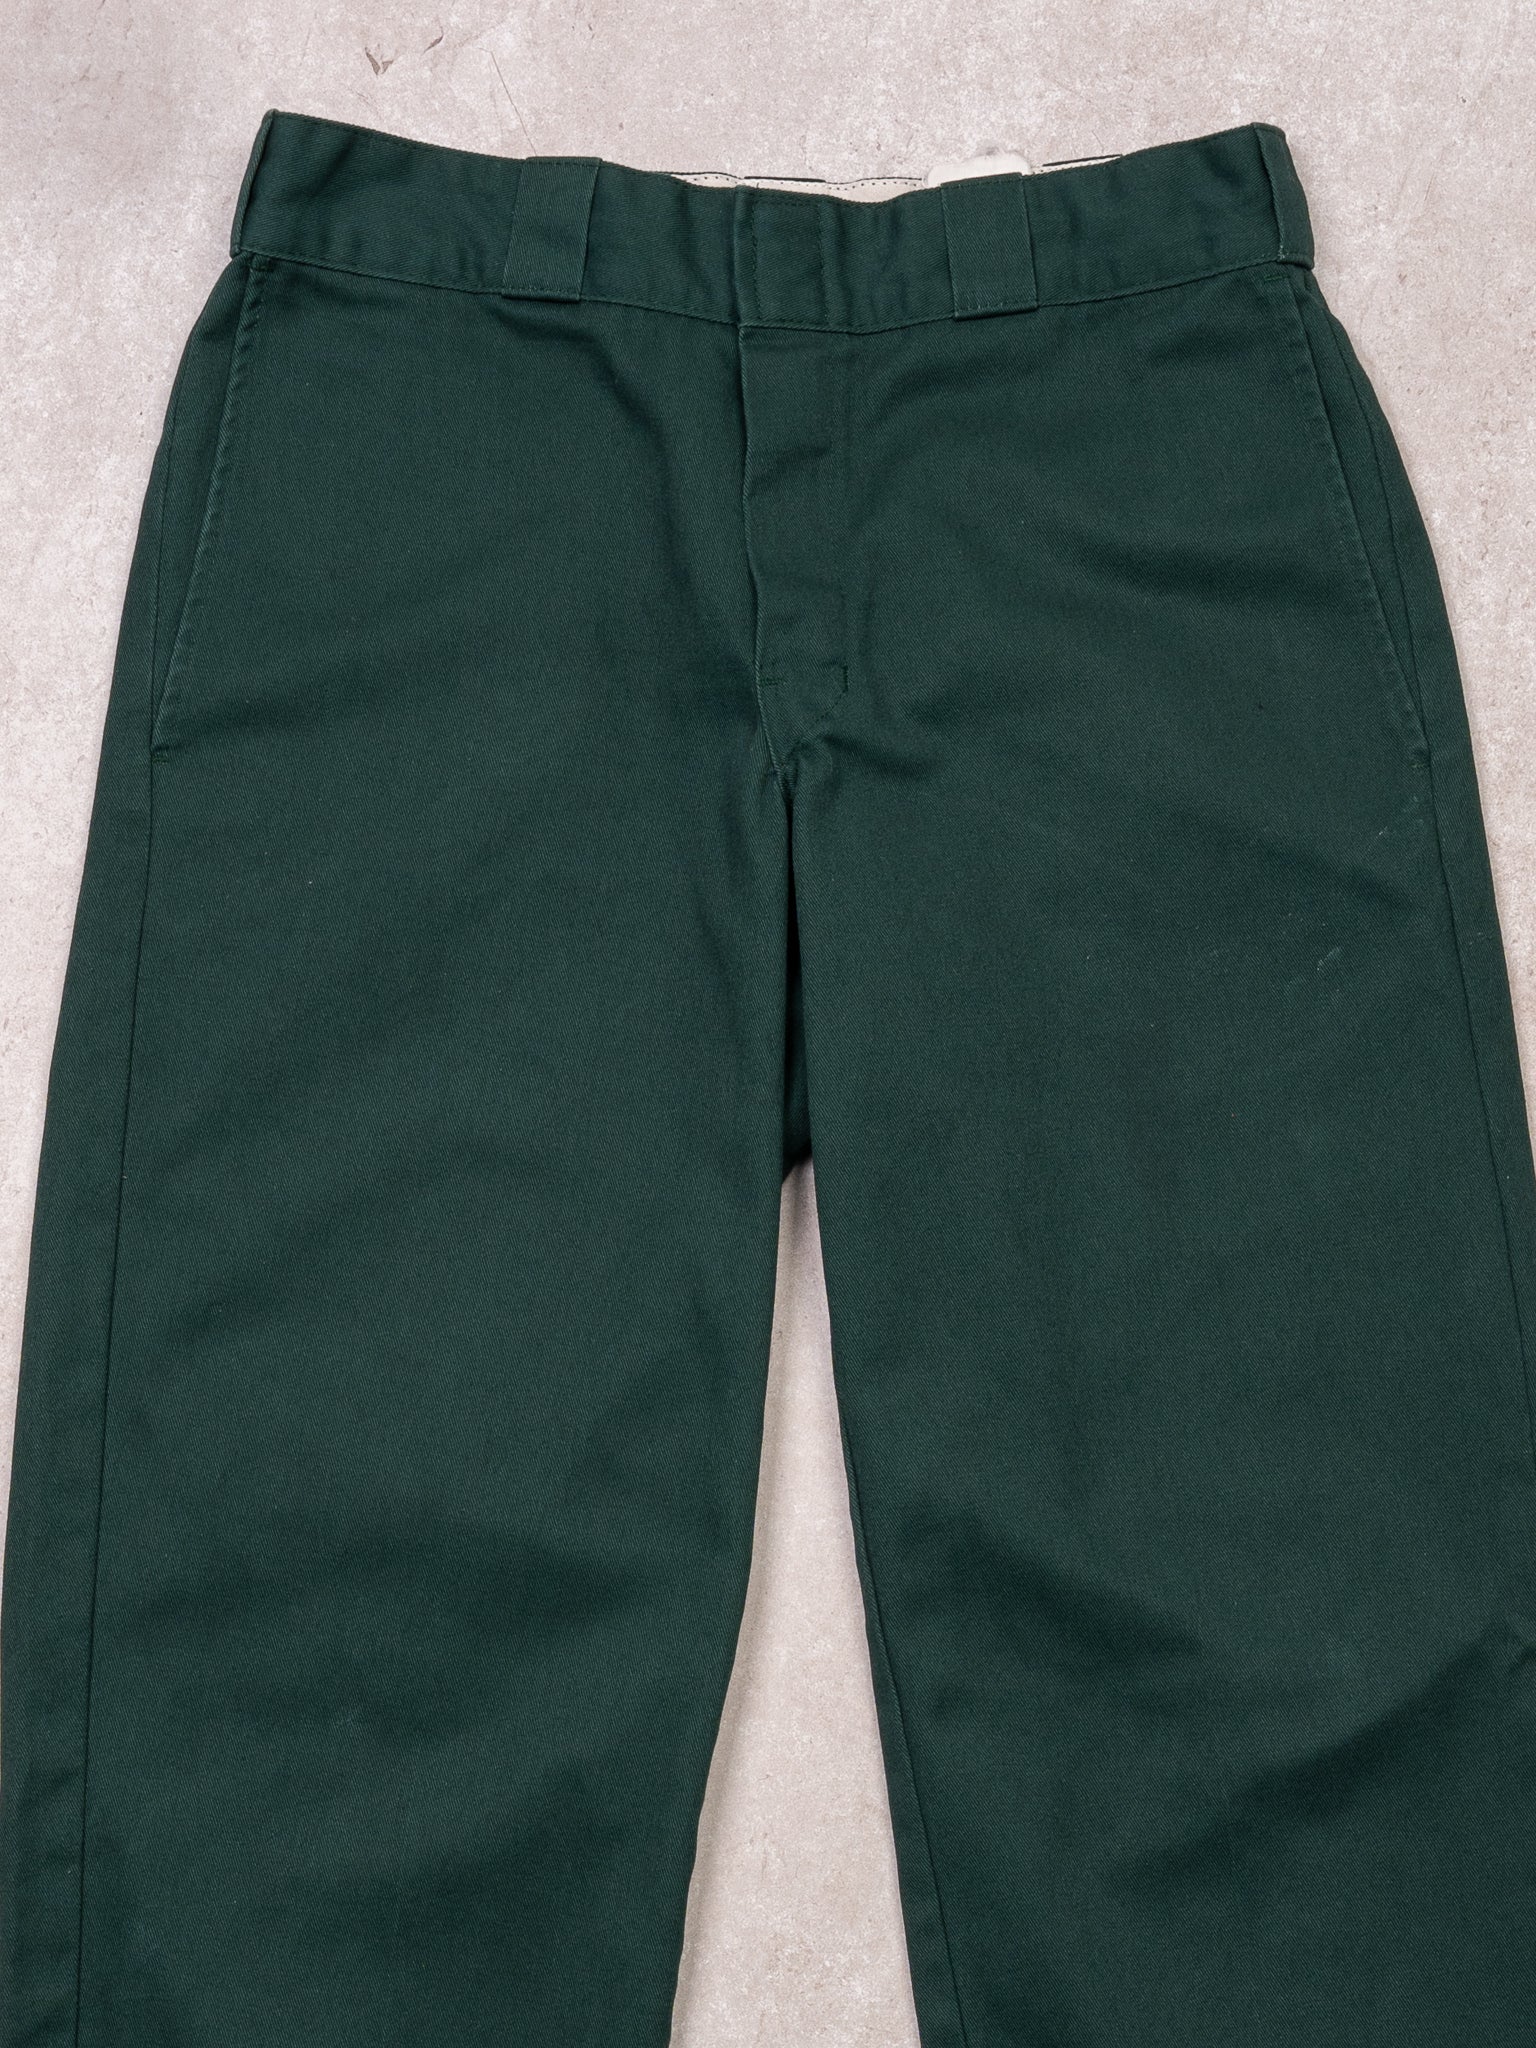 VIntage Green Dickies 874 Original Fit Pants (30 x 30)